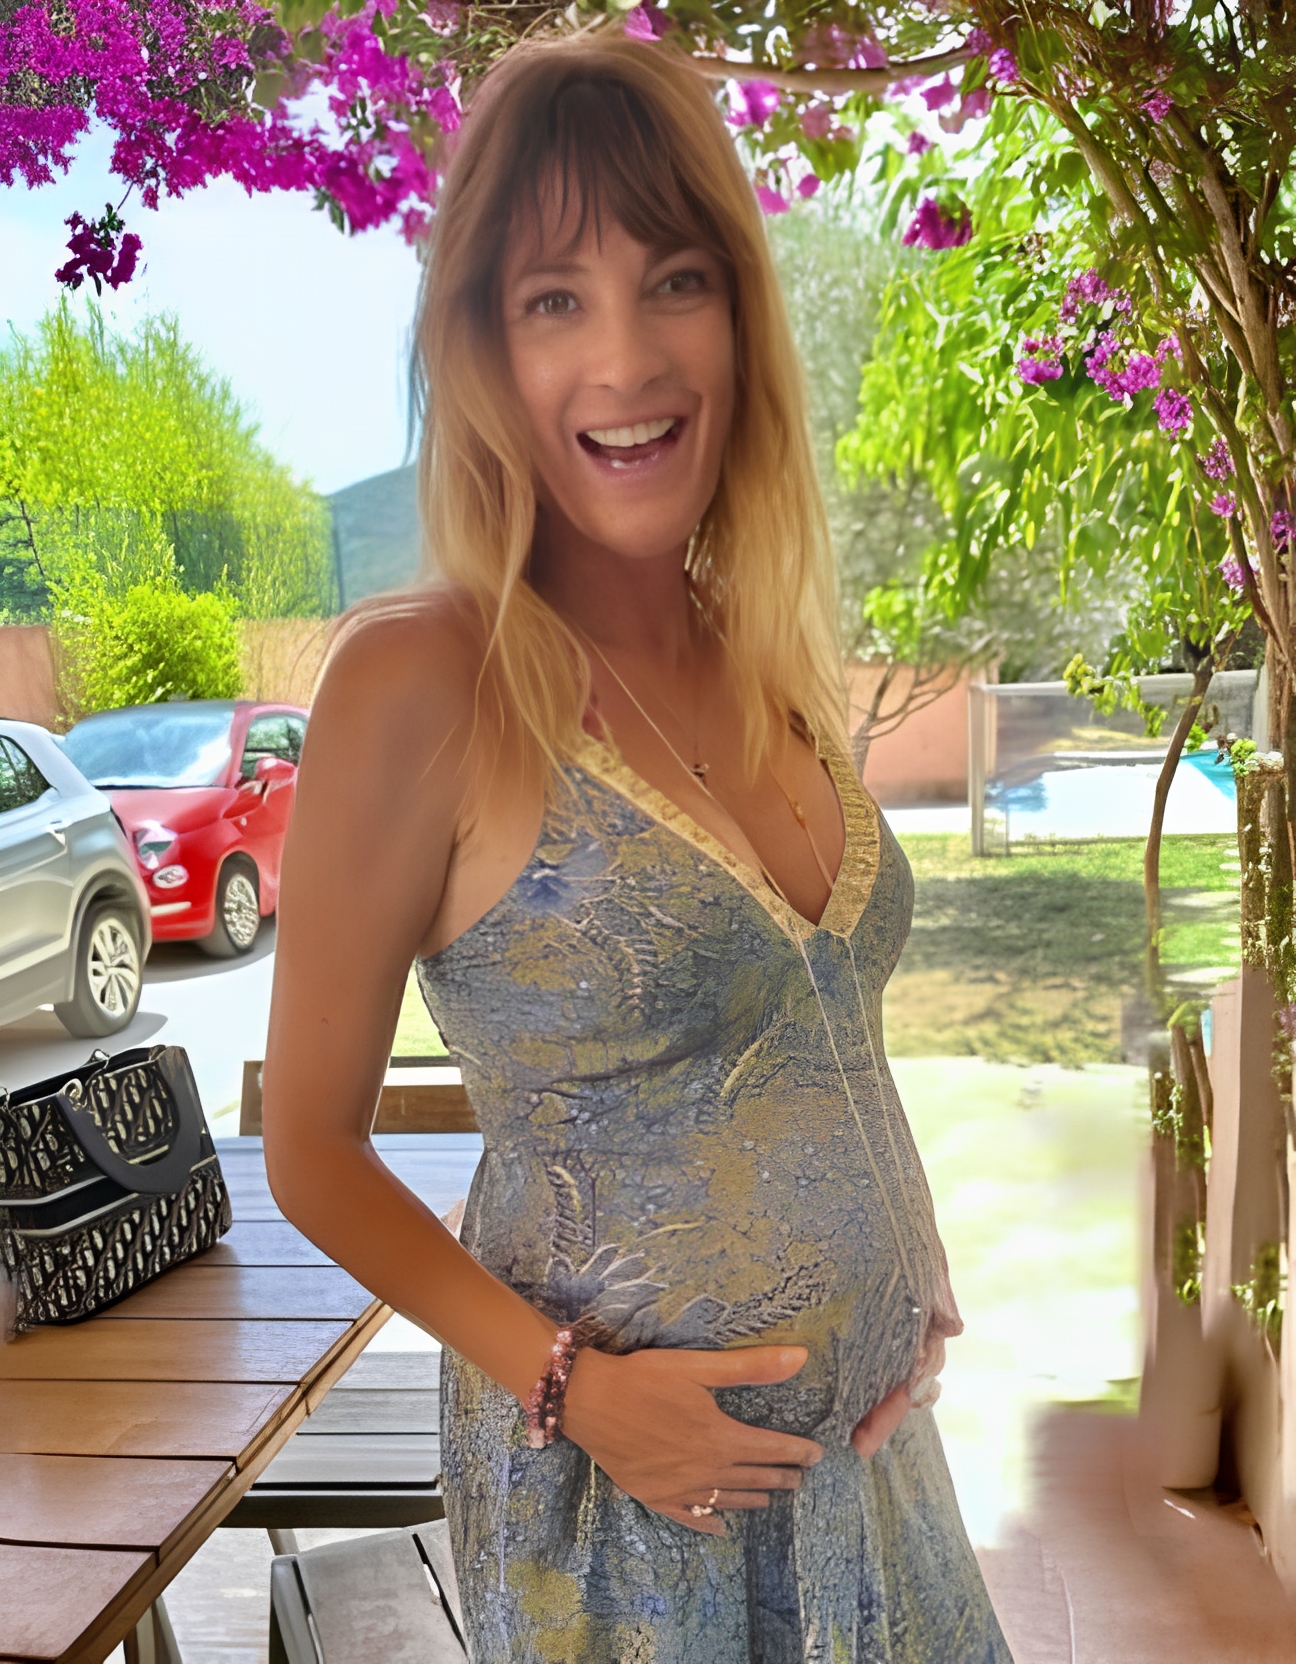 La chanteuse et comédienne Ève Angeli a annoncé sur son compte Instagram être enceinte de son premier enfant, à l’âge de 42 ans. Elle a partagé une photo d’elle avec son ventre rond et un message plein de joie et de gratitude.
